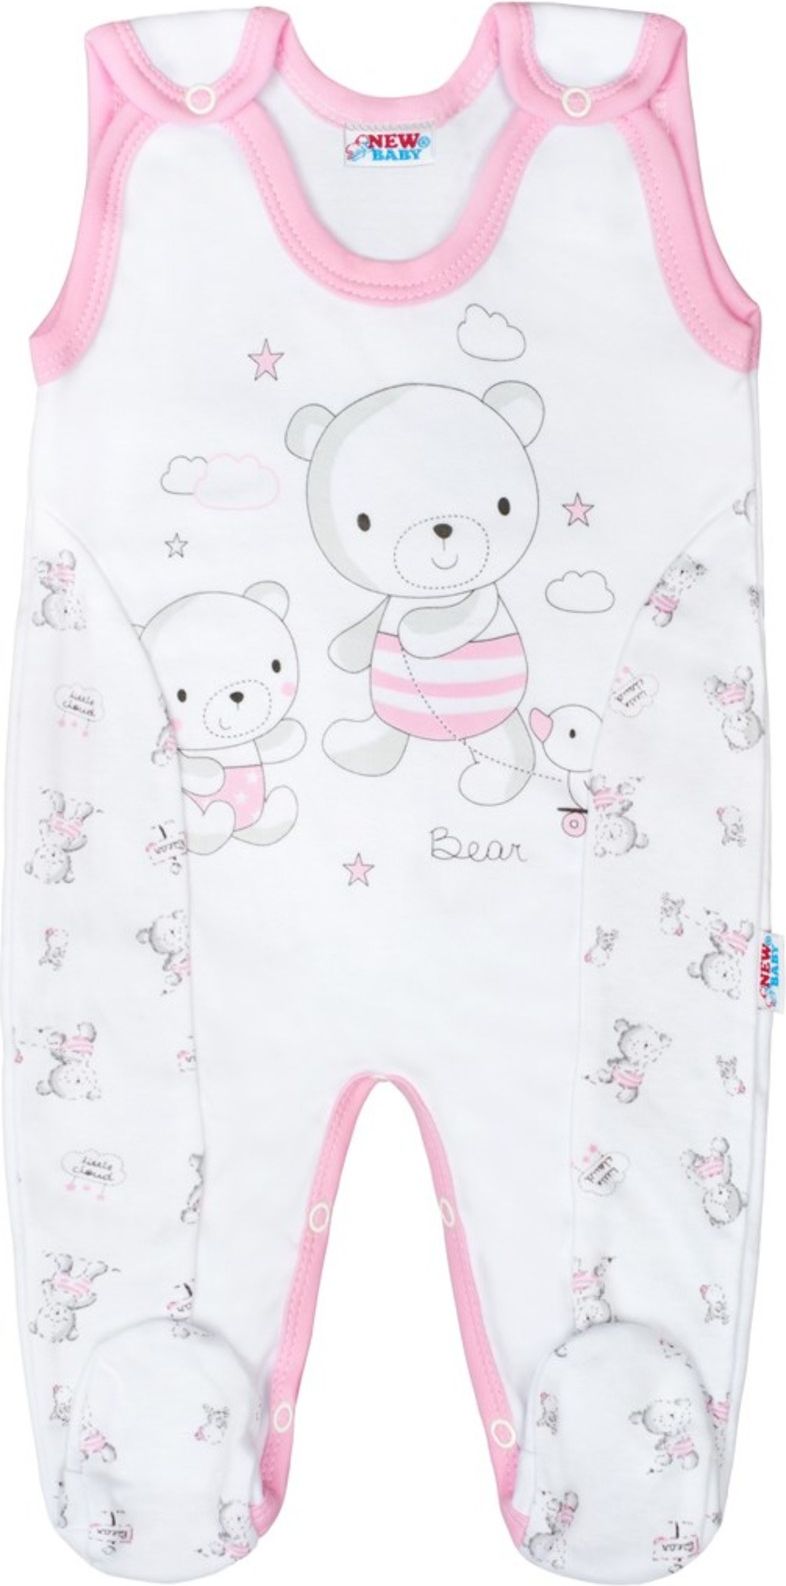 Kojenecké dupačky New Baby Bears růžové - Kojenecké dupačky New Baby Bears růžové - obrázek 1